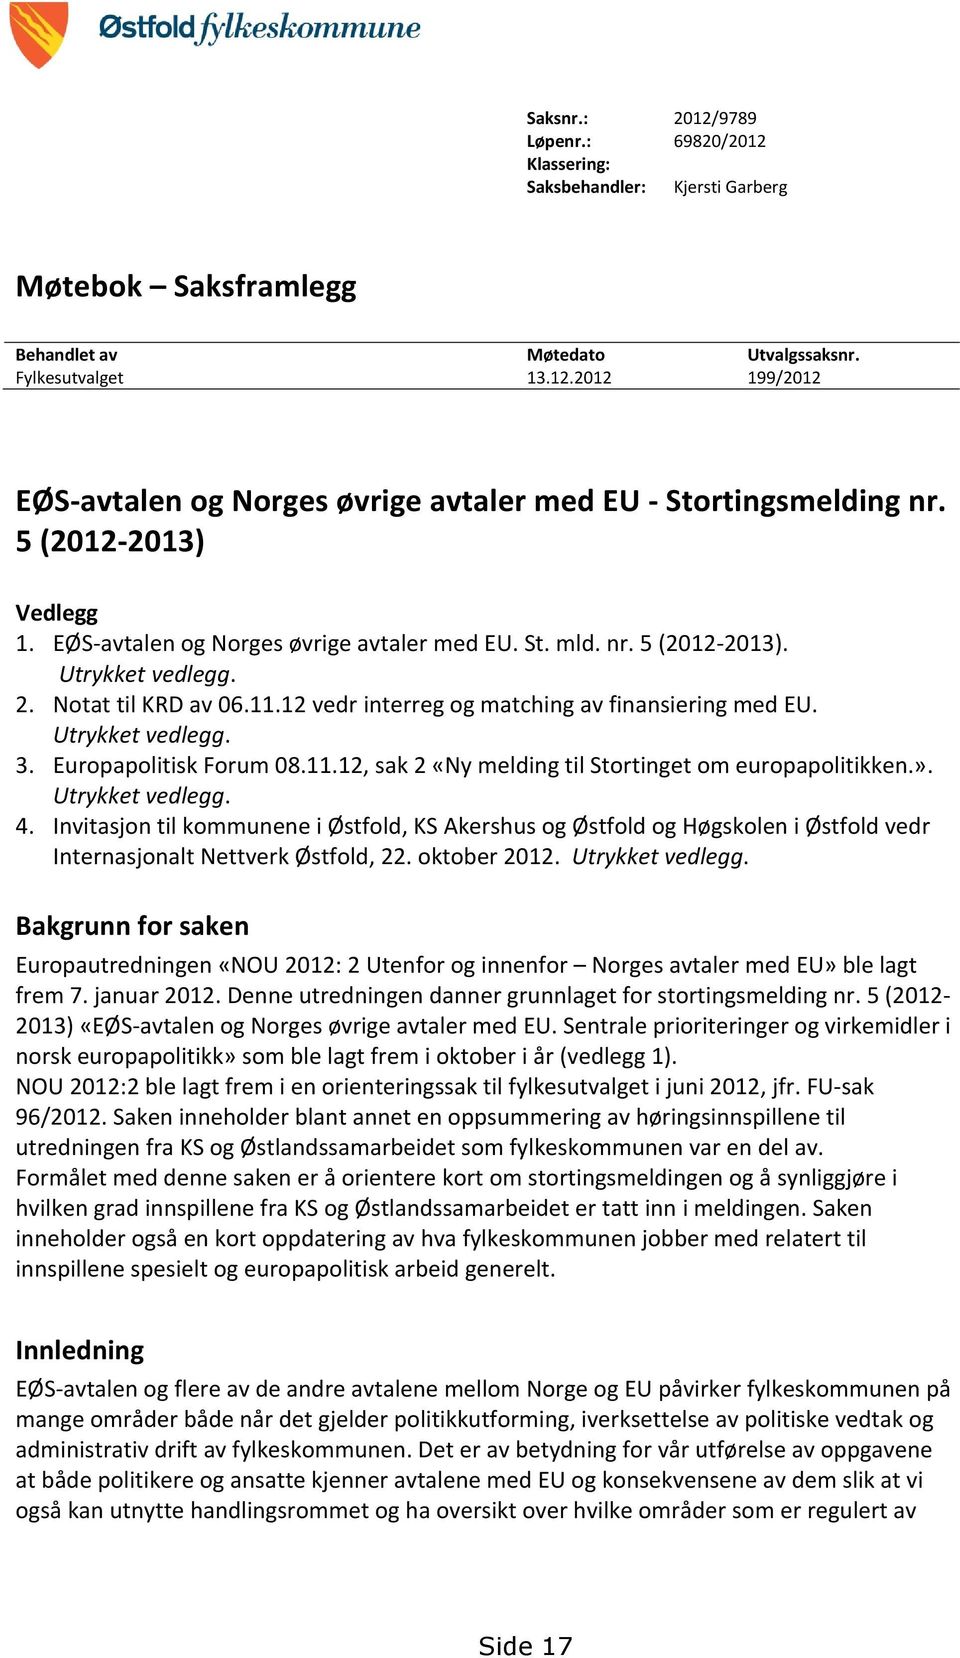 Utrykket vedlegg. 3. Europapolitisk Forum 08.11.12, sak 2 «Ny melding til Stortinget om europapolitikken.». Utrykket vedlegg. 4.